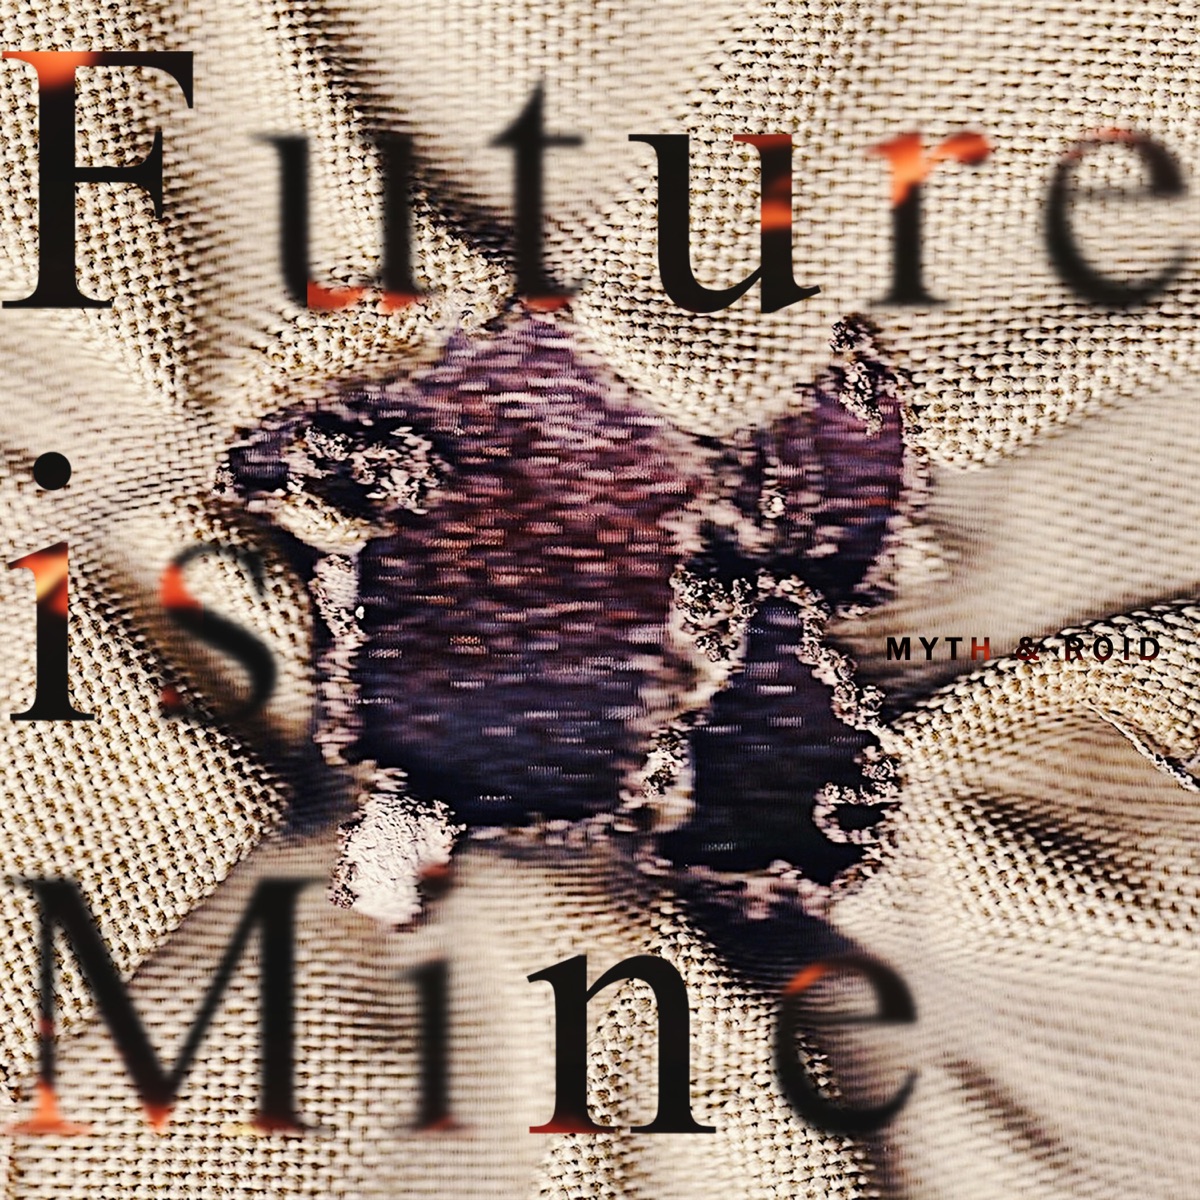 『MYTH & ROID - 追想輪廻 歌詞』収録の『Future is Mine』ジャケット